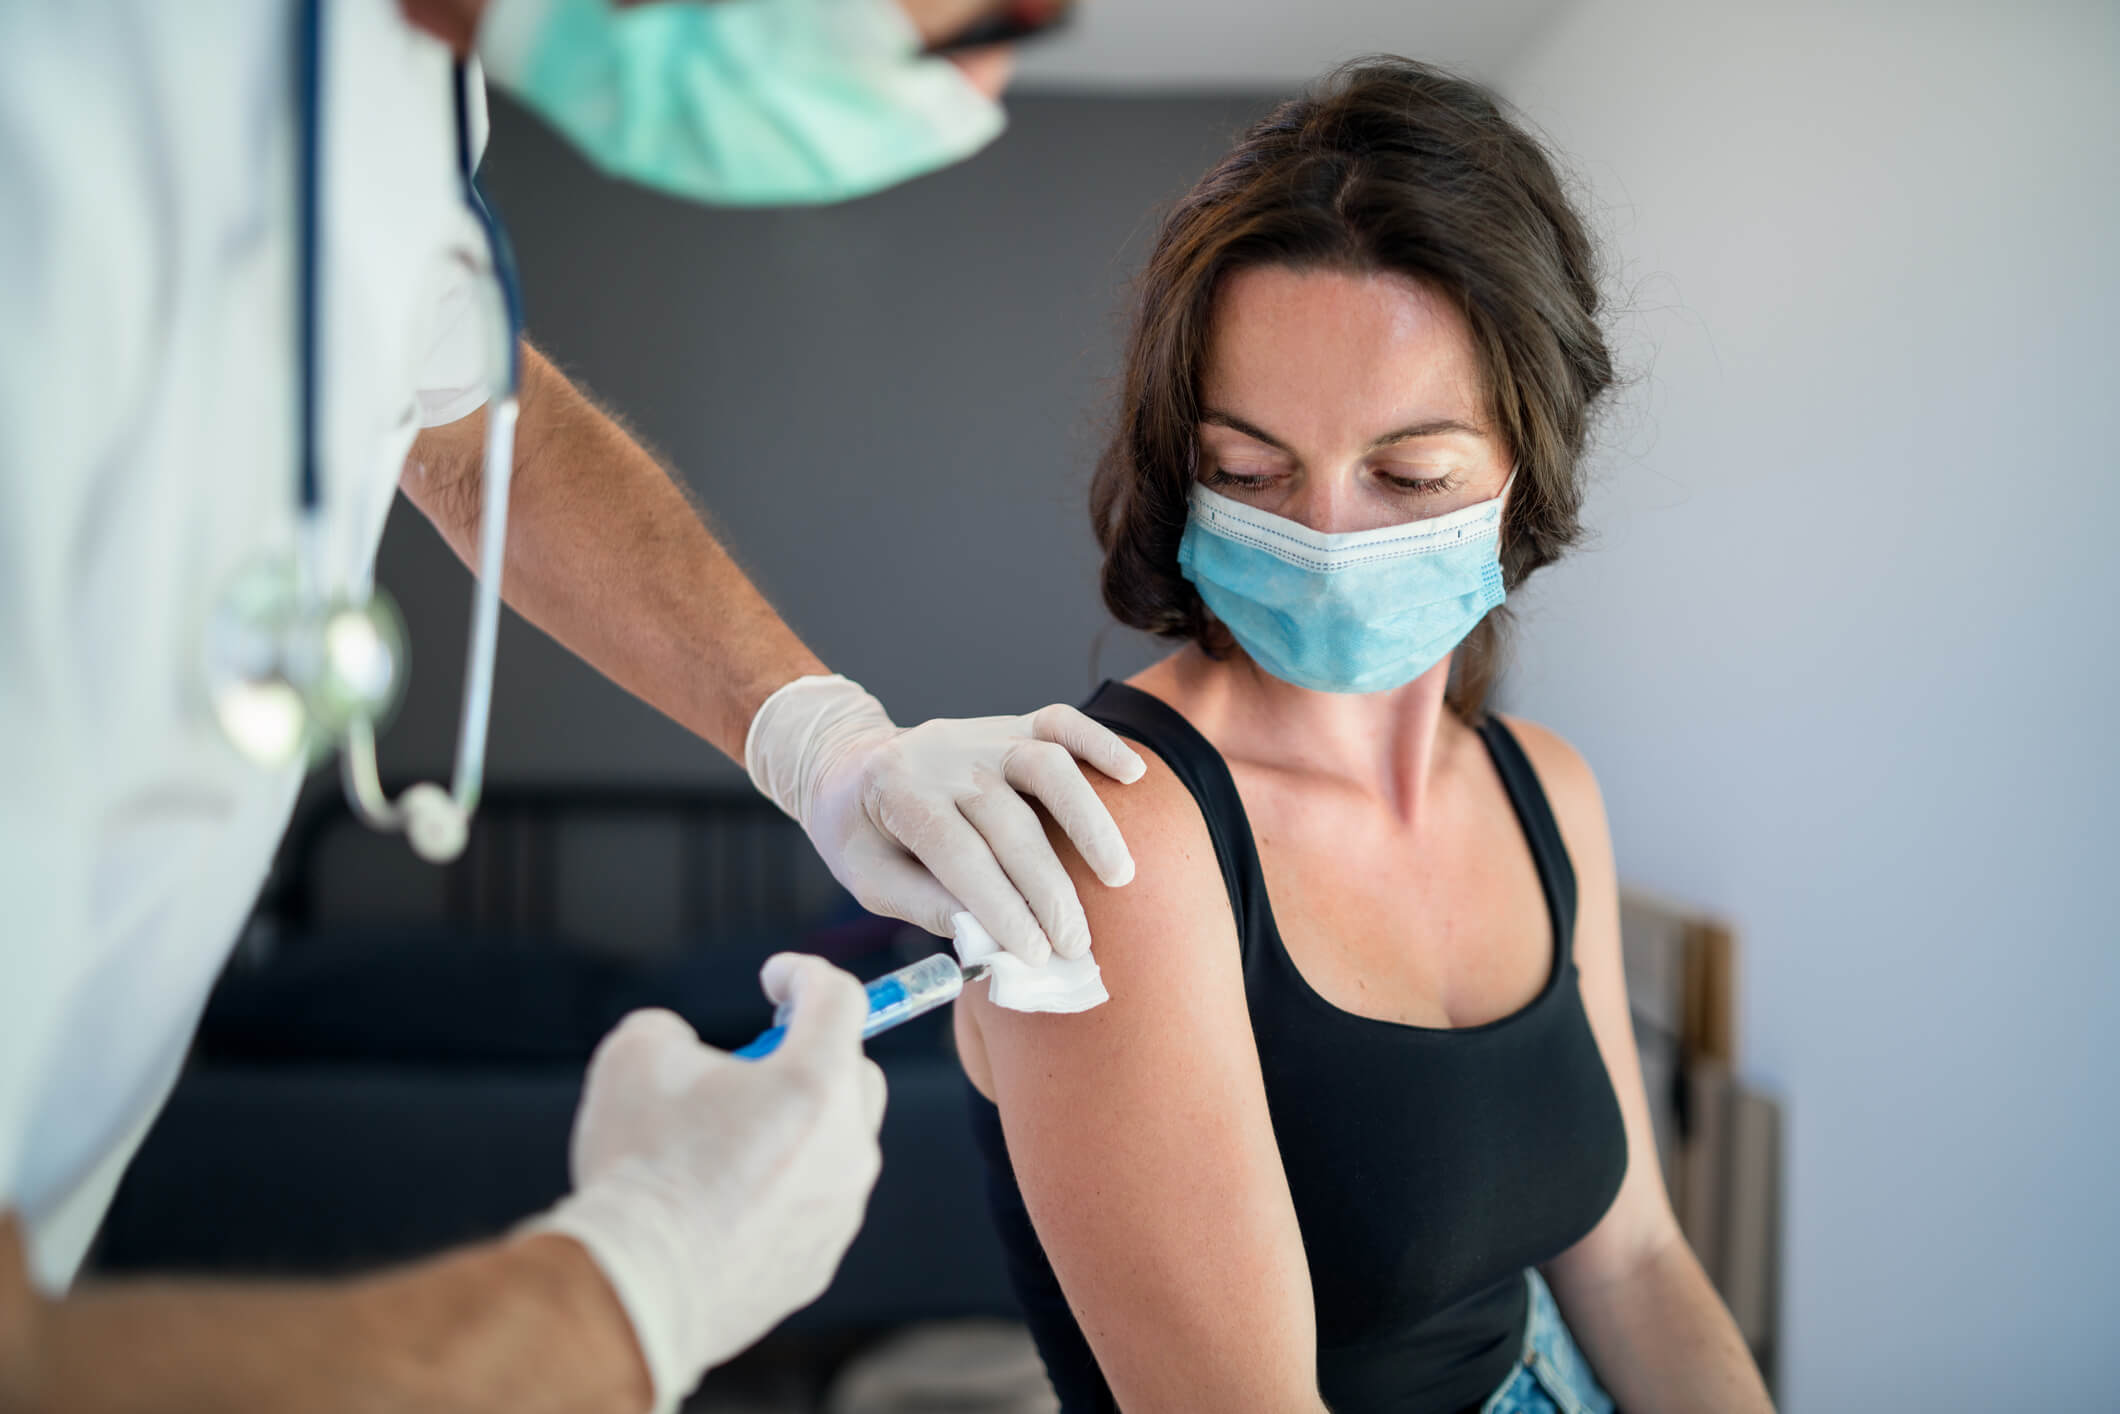 「アストラゼネカ製ワクチンは安全」WHO、EMAが見解…メディア報道が不安を増大かの画像1